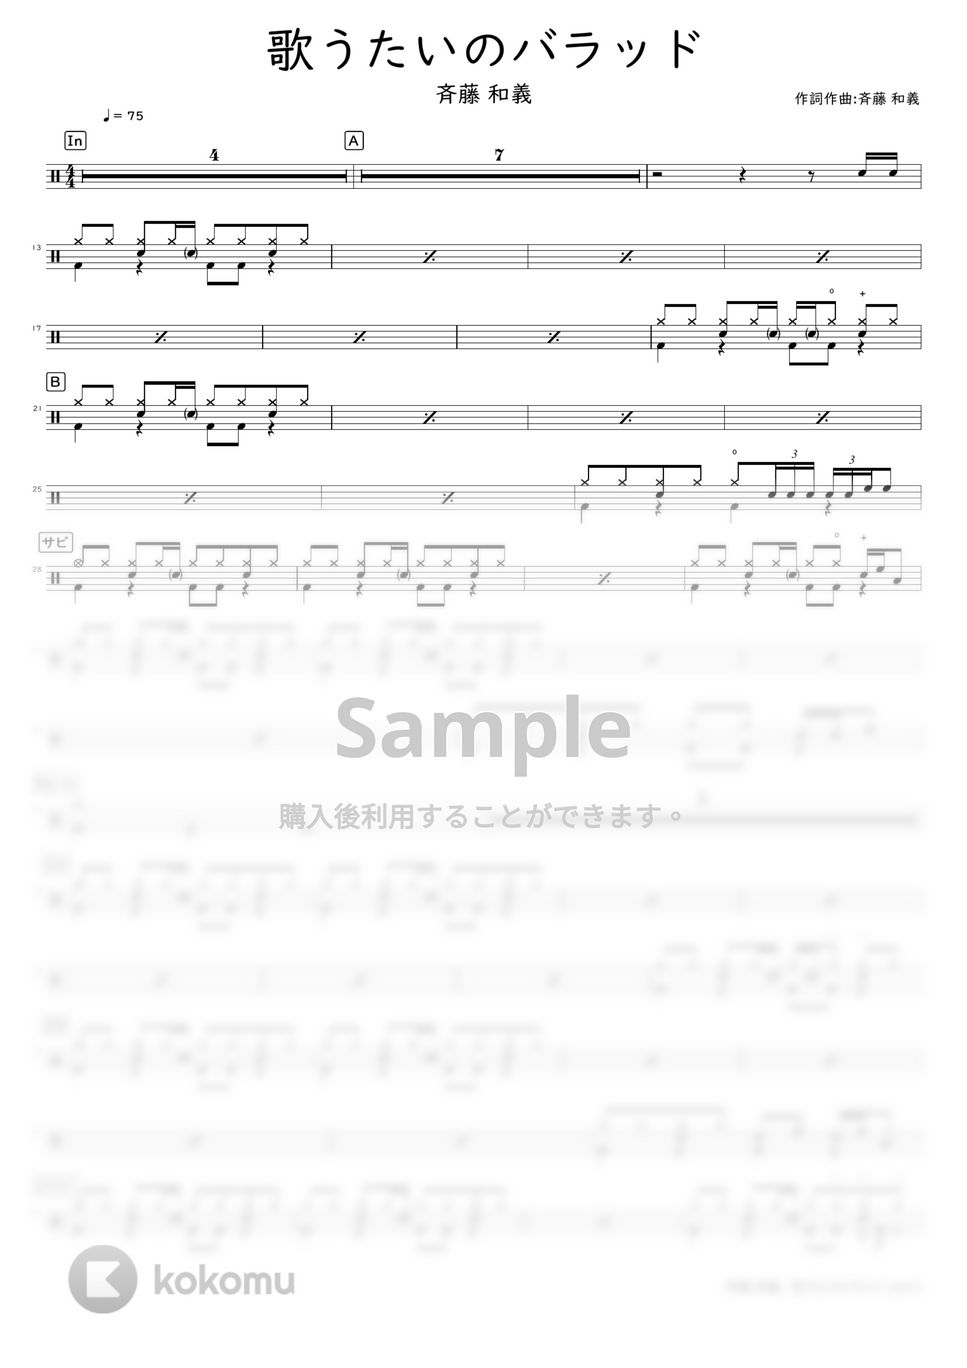 斉藤 和義 - 歌うたいのバラッド by DSU